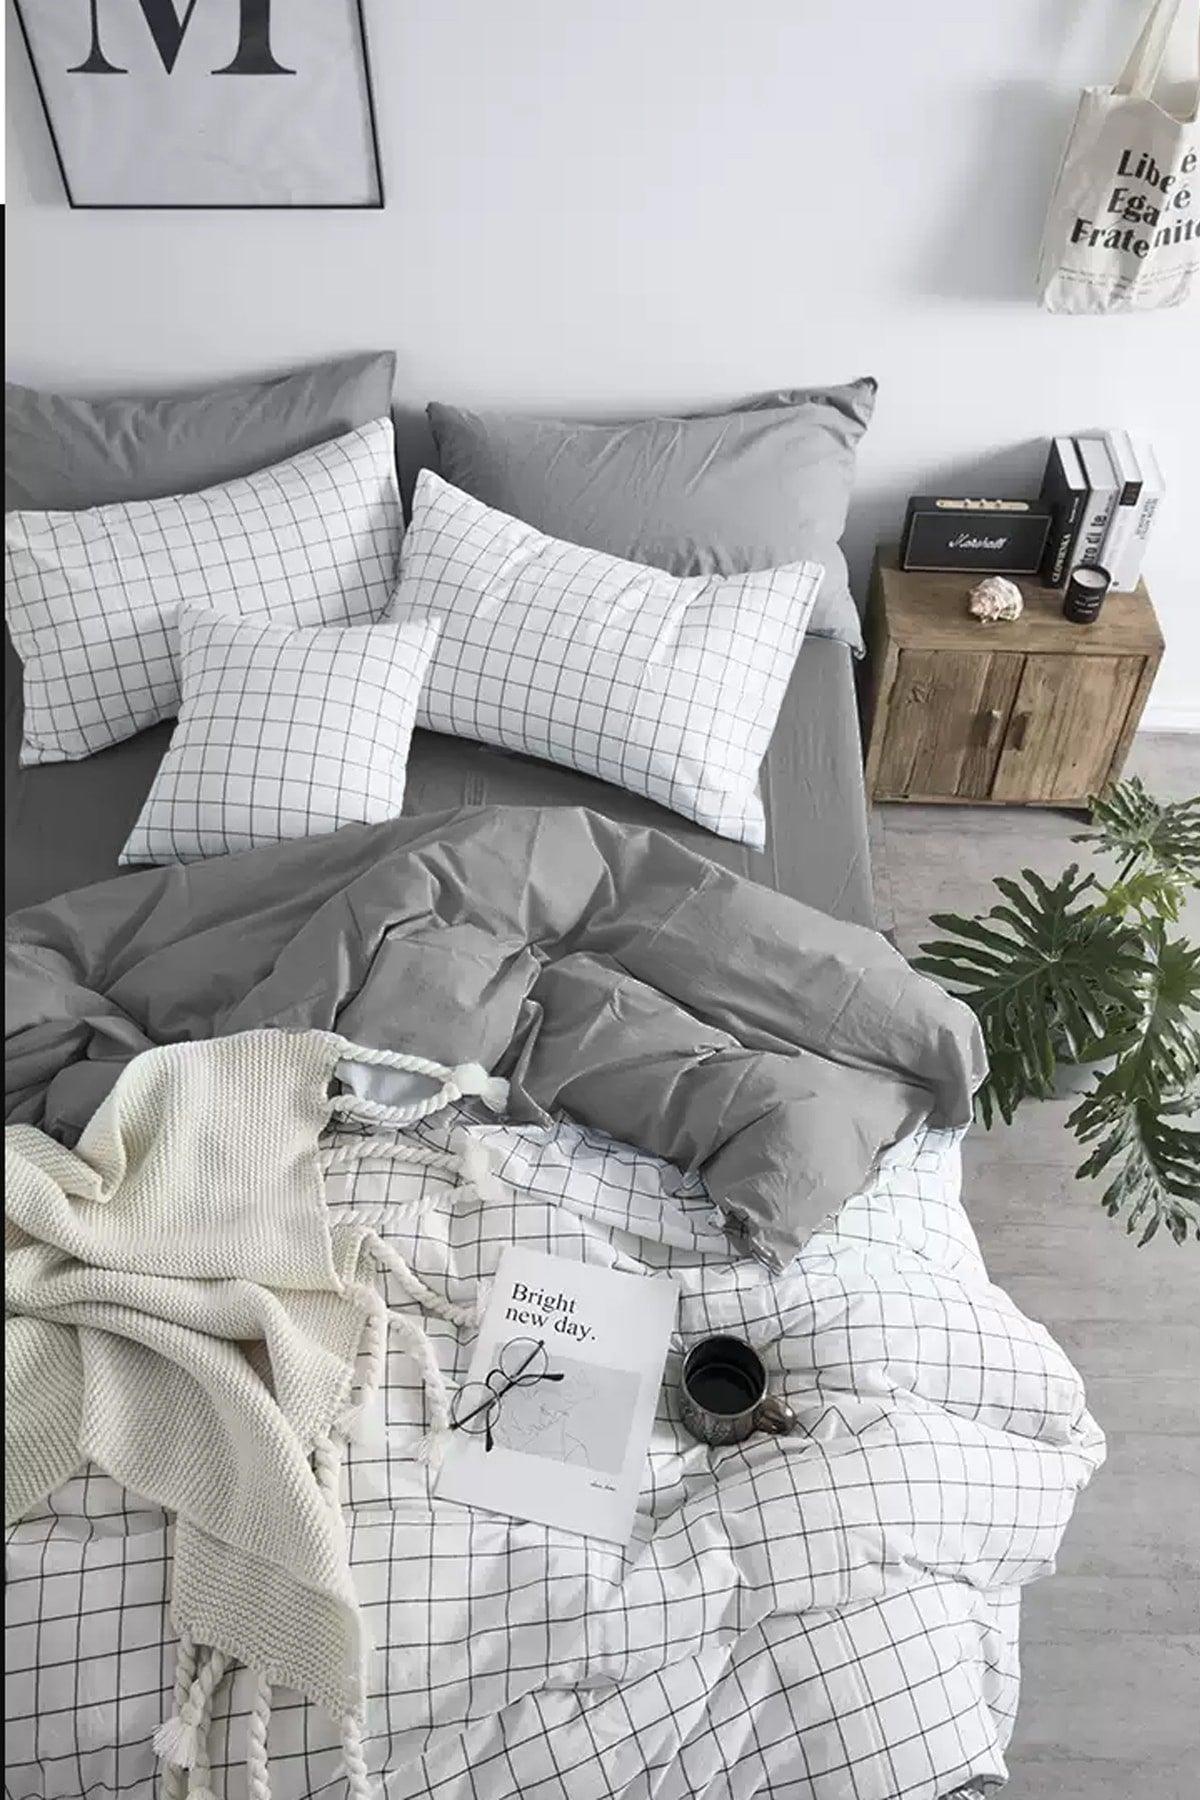 Elastic Bed Linen Duvet Cover Set Double White Small Square White Gray - Swordslife